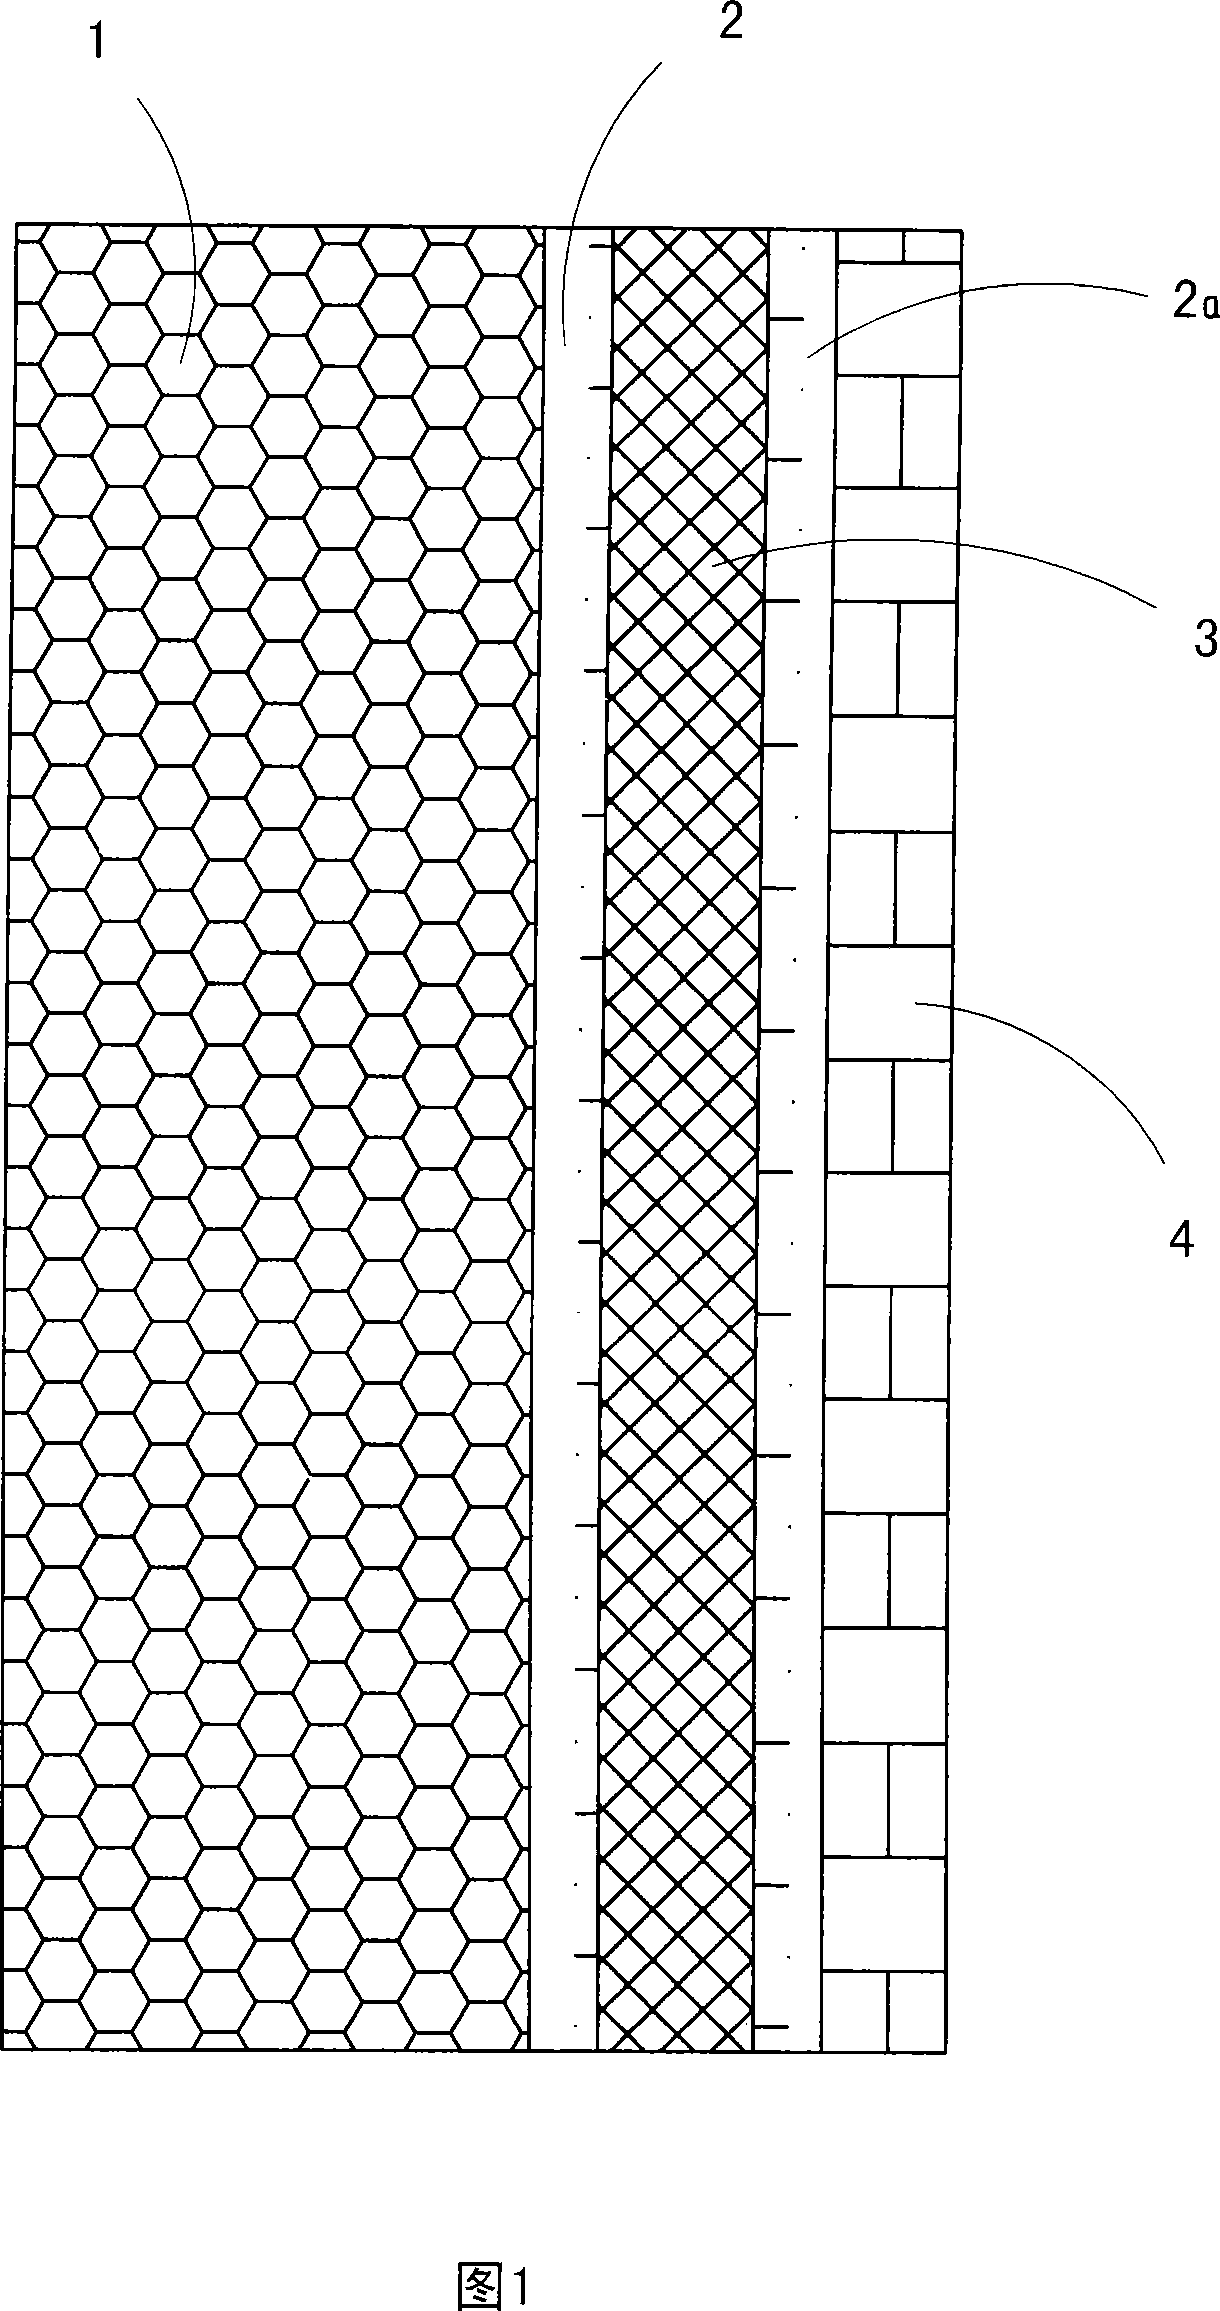 Wall surface integrated bricks